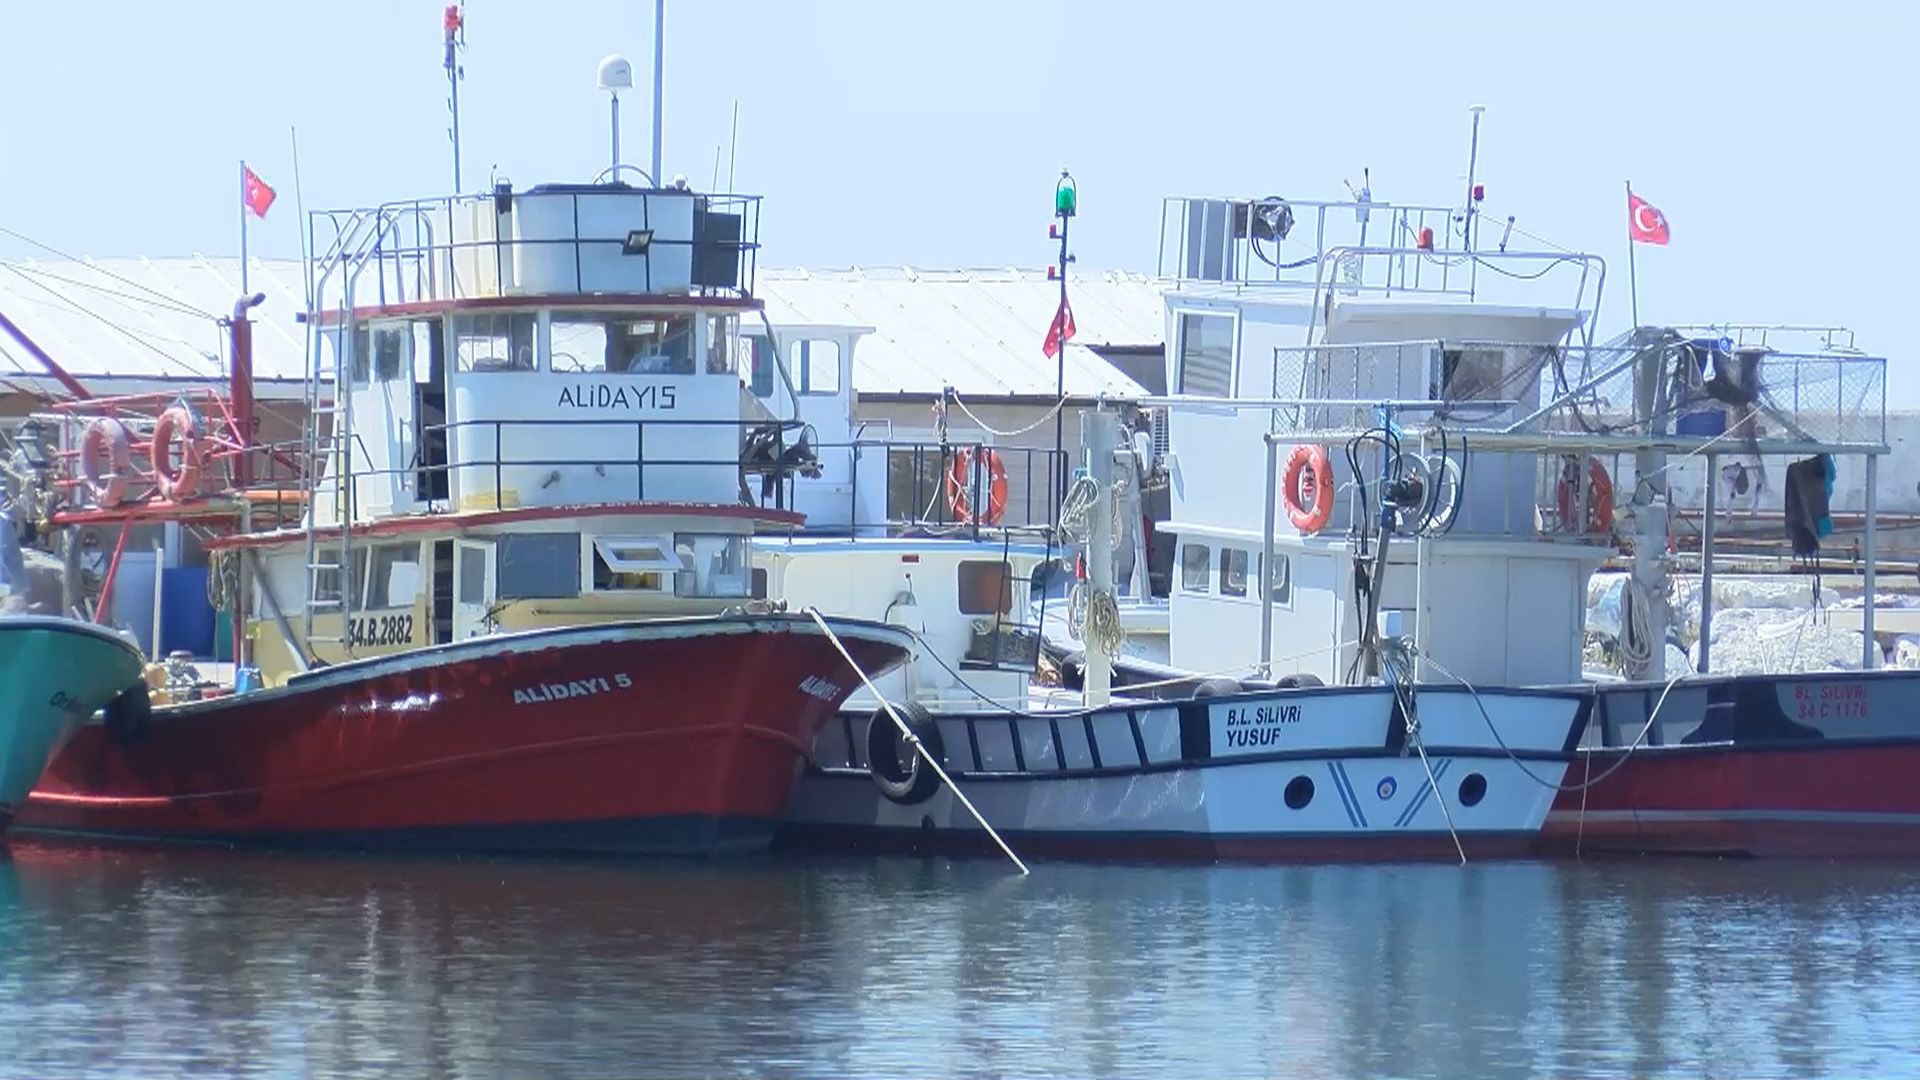 Marmara Denizi'nde müsilaj nedeniyle av sezonu ertelensin mi ertelenmesin mi tartışması